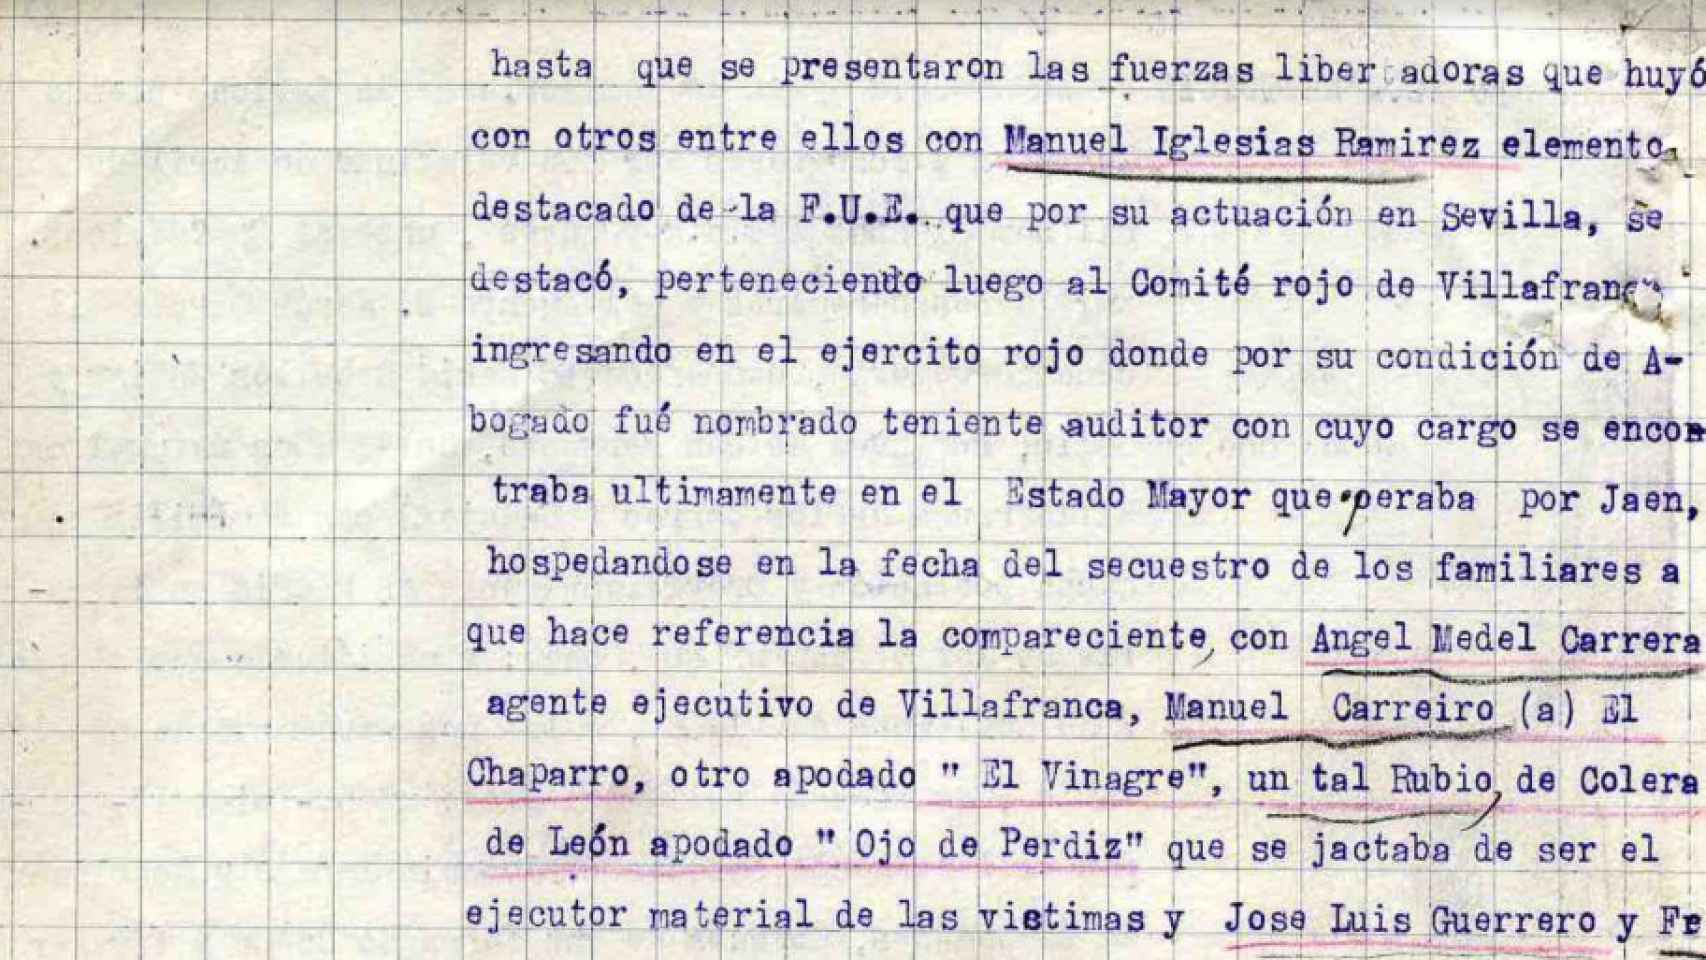 Testimonio de María Ceballos Zúñiga, familiar de los asesinados.